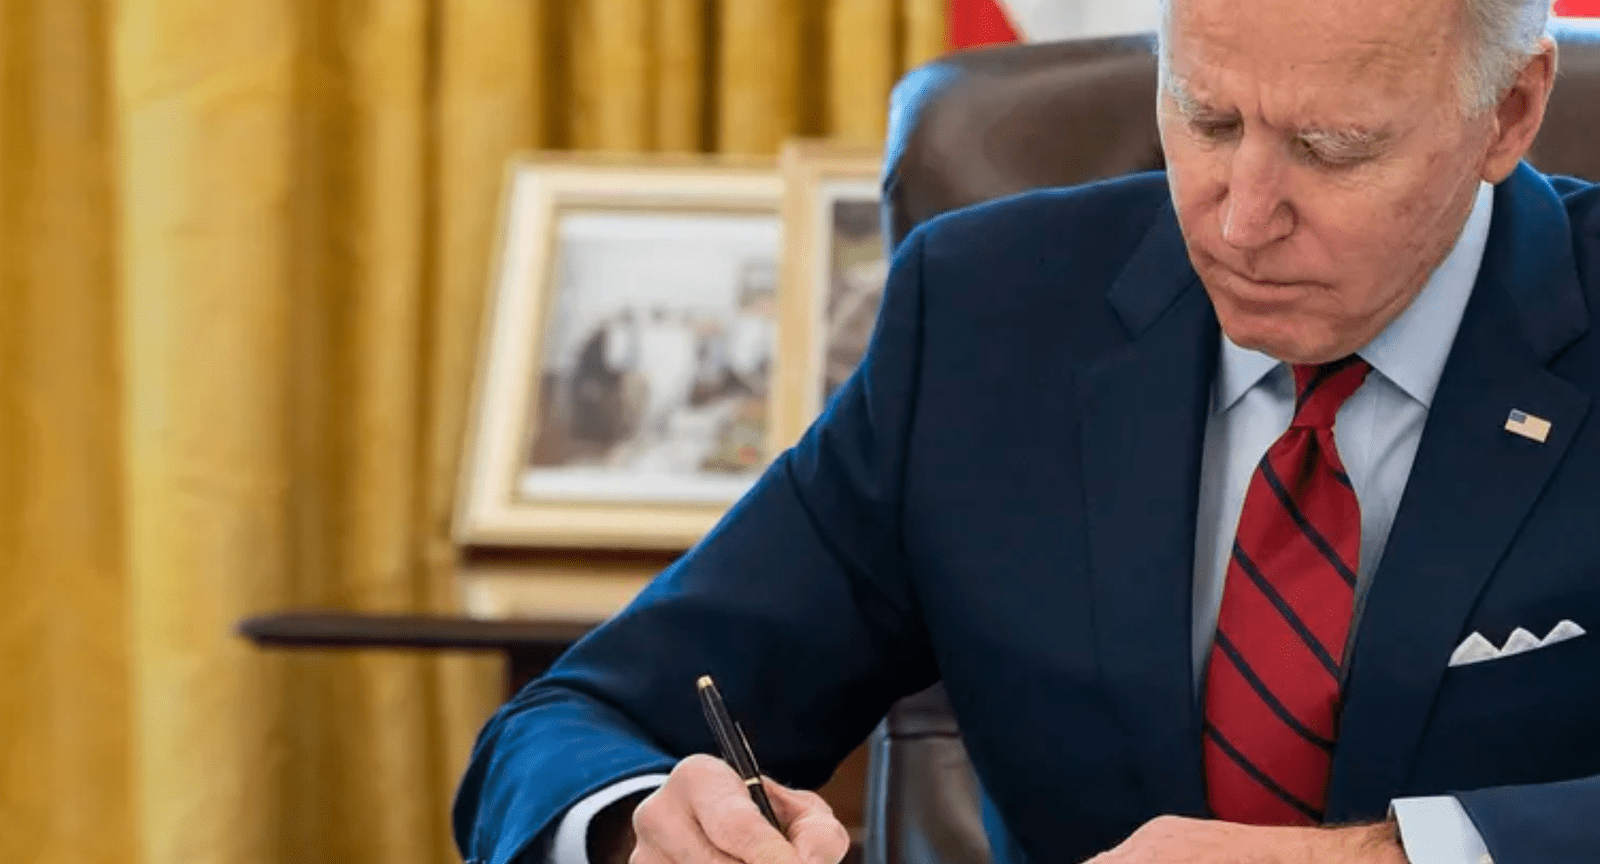 President Biden at desk signing legislation